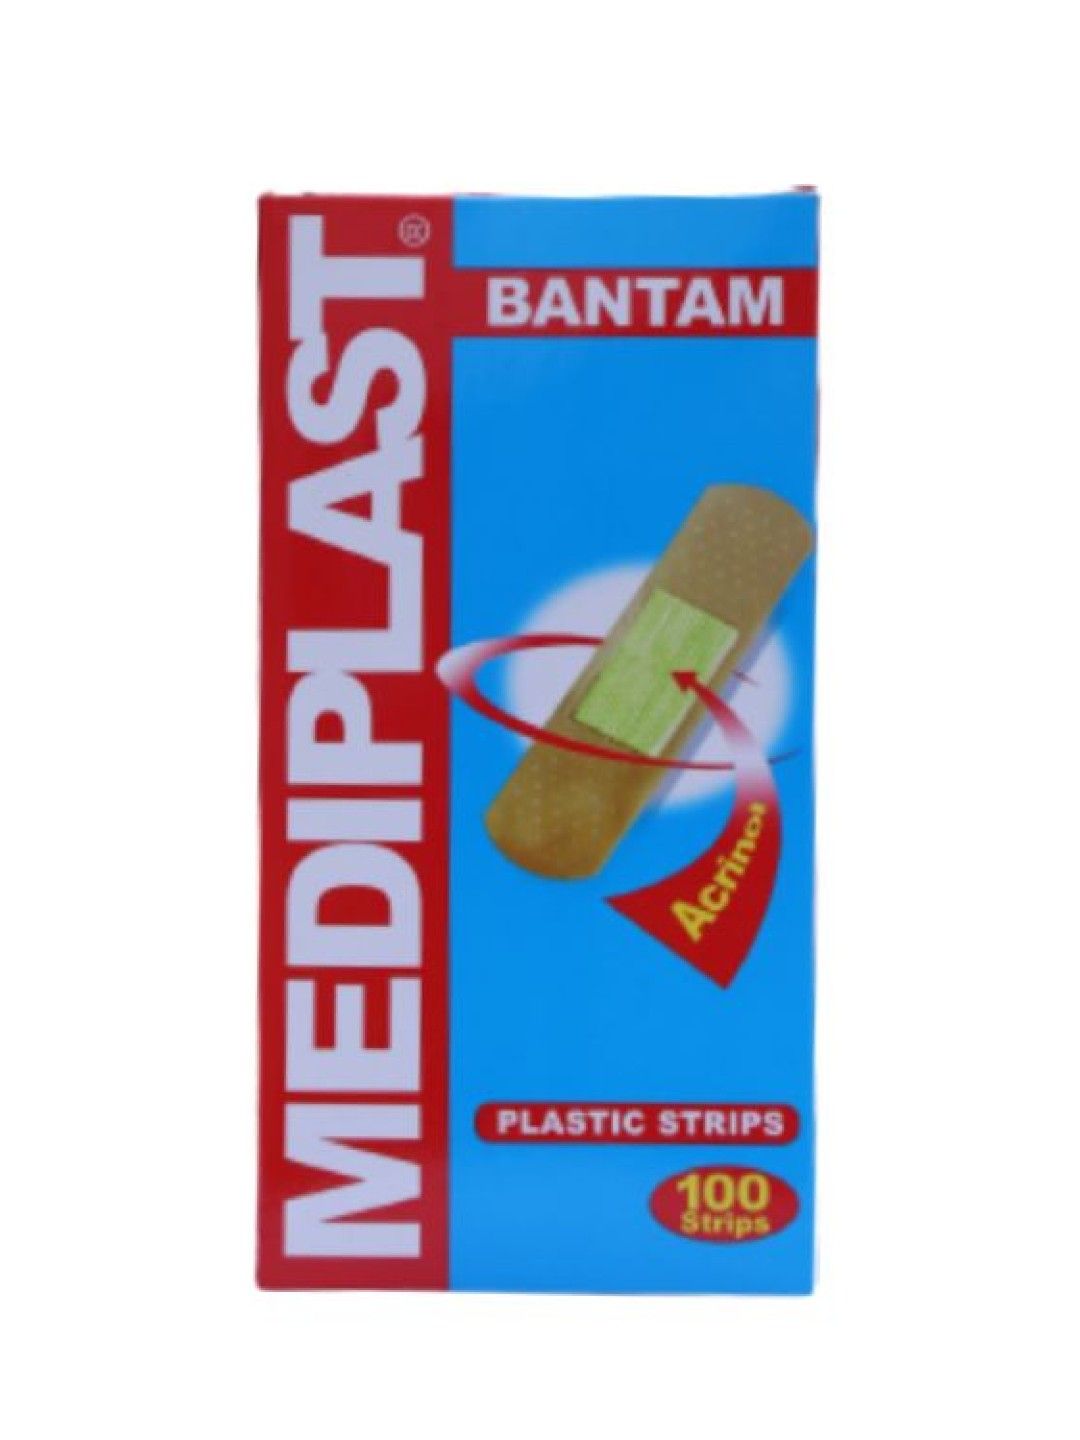 Mediplast Plastic Strips Bantam (100s)